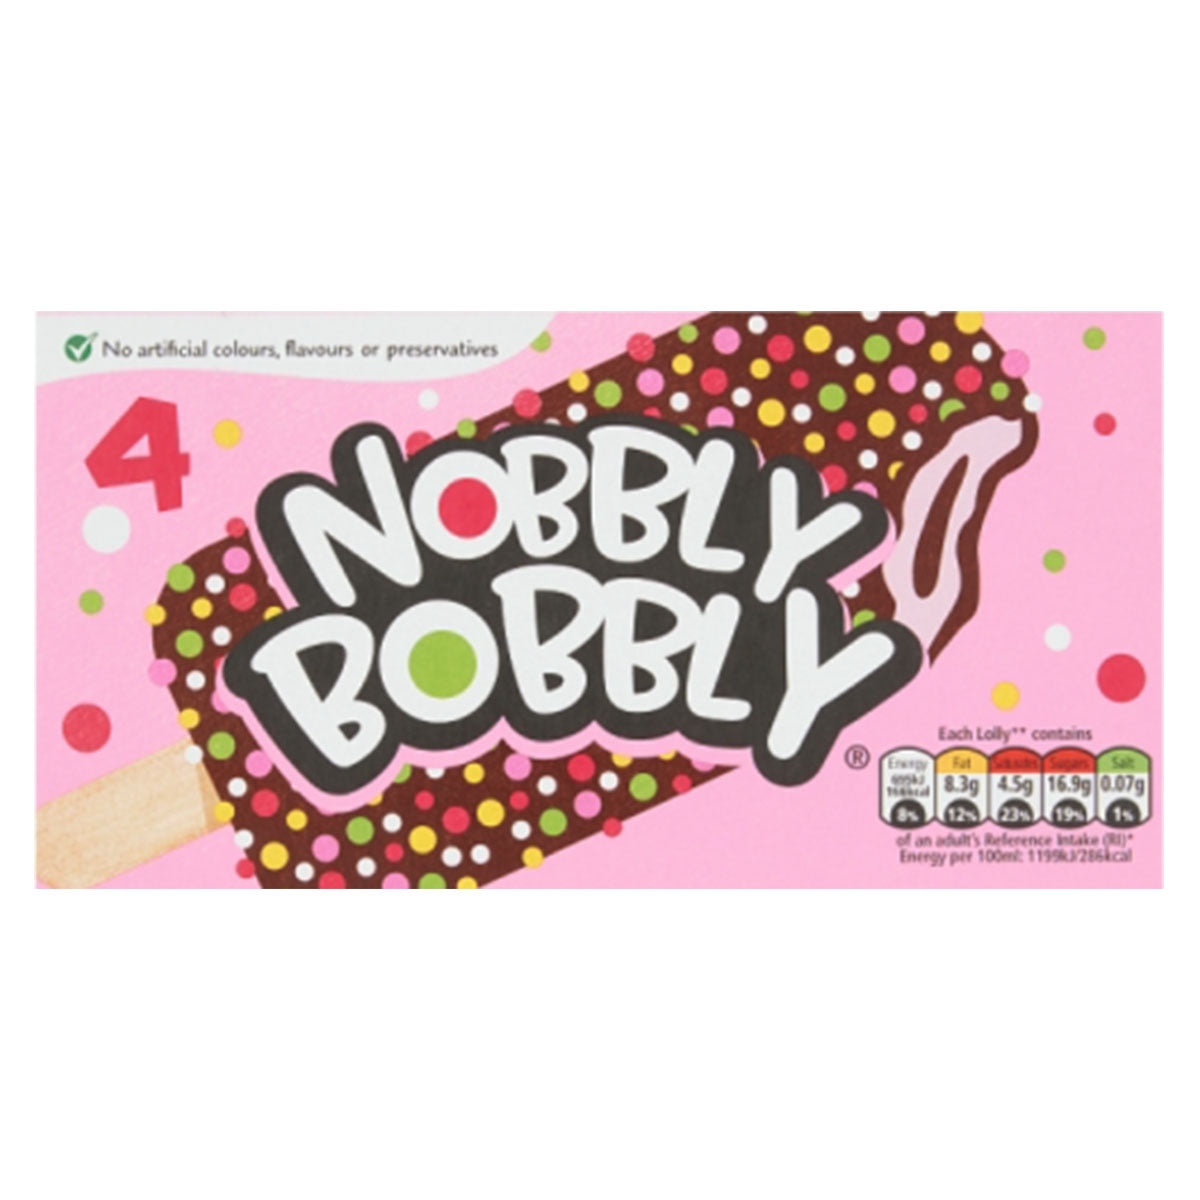 Nobbly Bobbly ice cream bar.